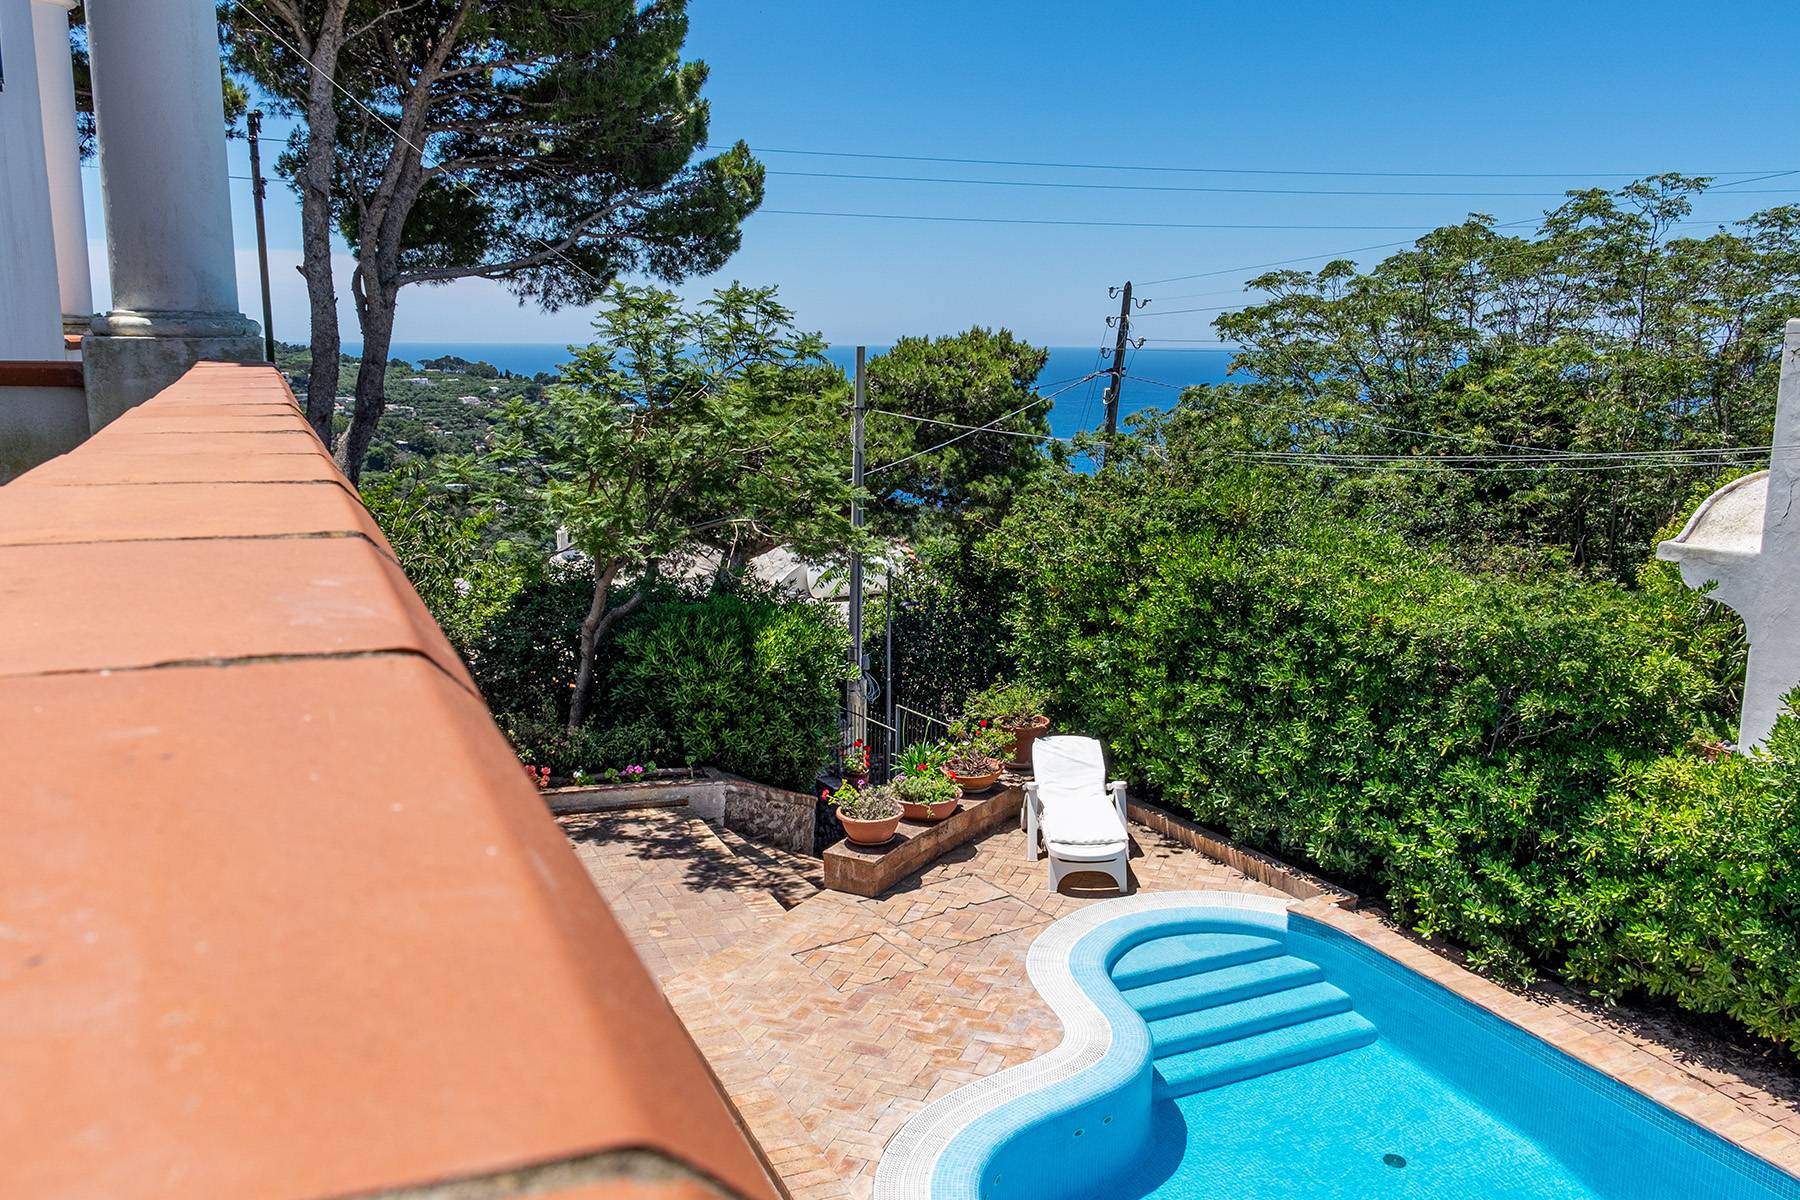 Villa in Vendita a Capri: 5 locali, 300 mq - Foto 21